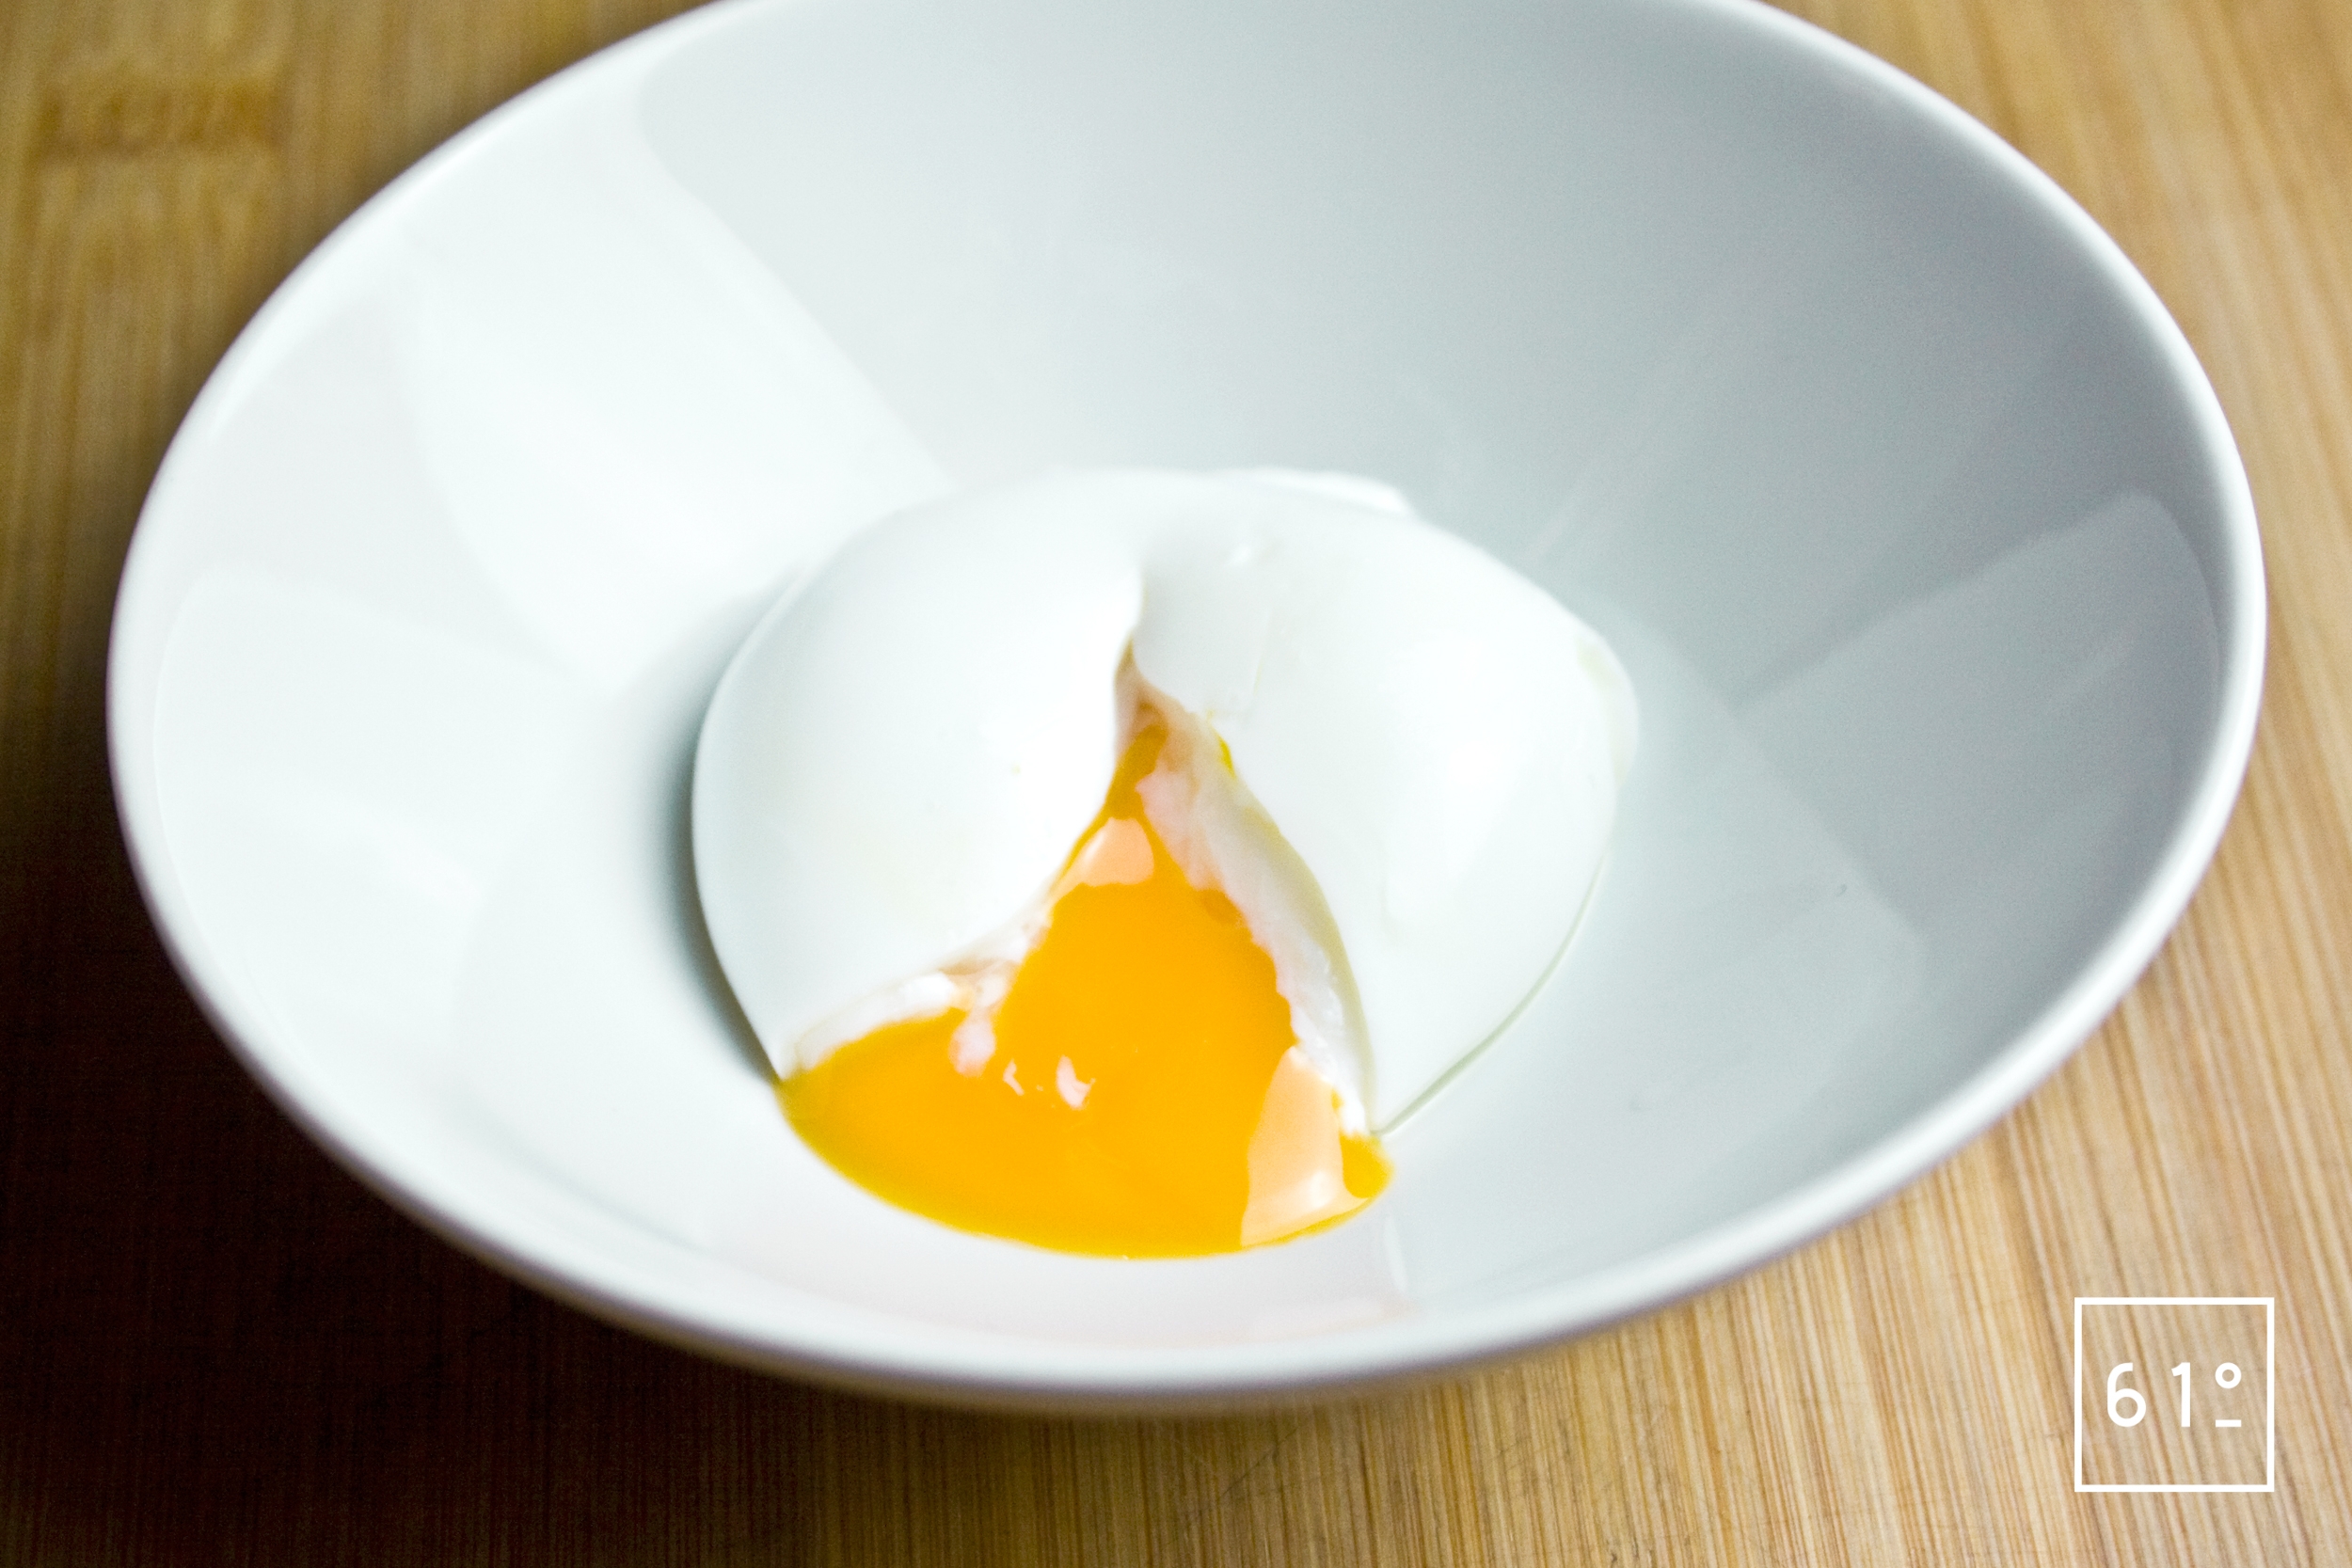 Почему яйца взрываются в микроволновке. Цвет желтка яиц. Воск, желток. Блюдо взбитое яйцо в скорлупе. Белый цвет под яйцо желток.